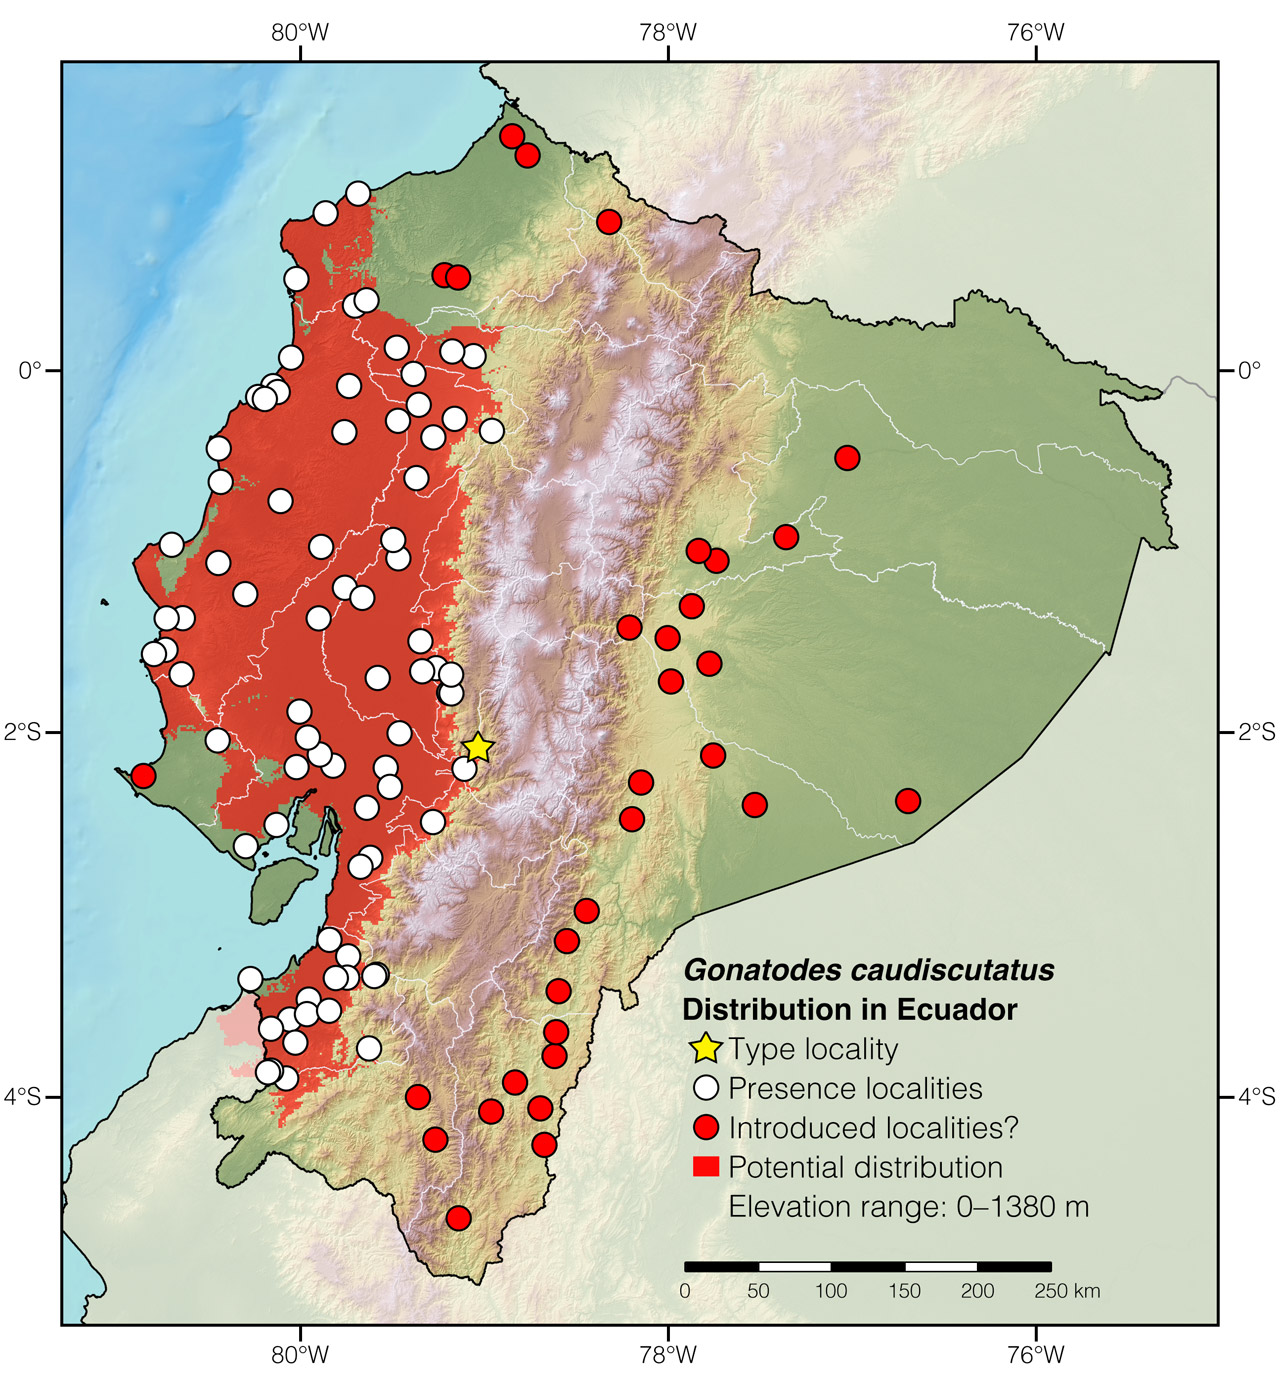 Distribution of Gonatodes caudiscutatus in Ecuador